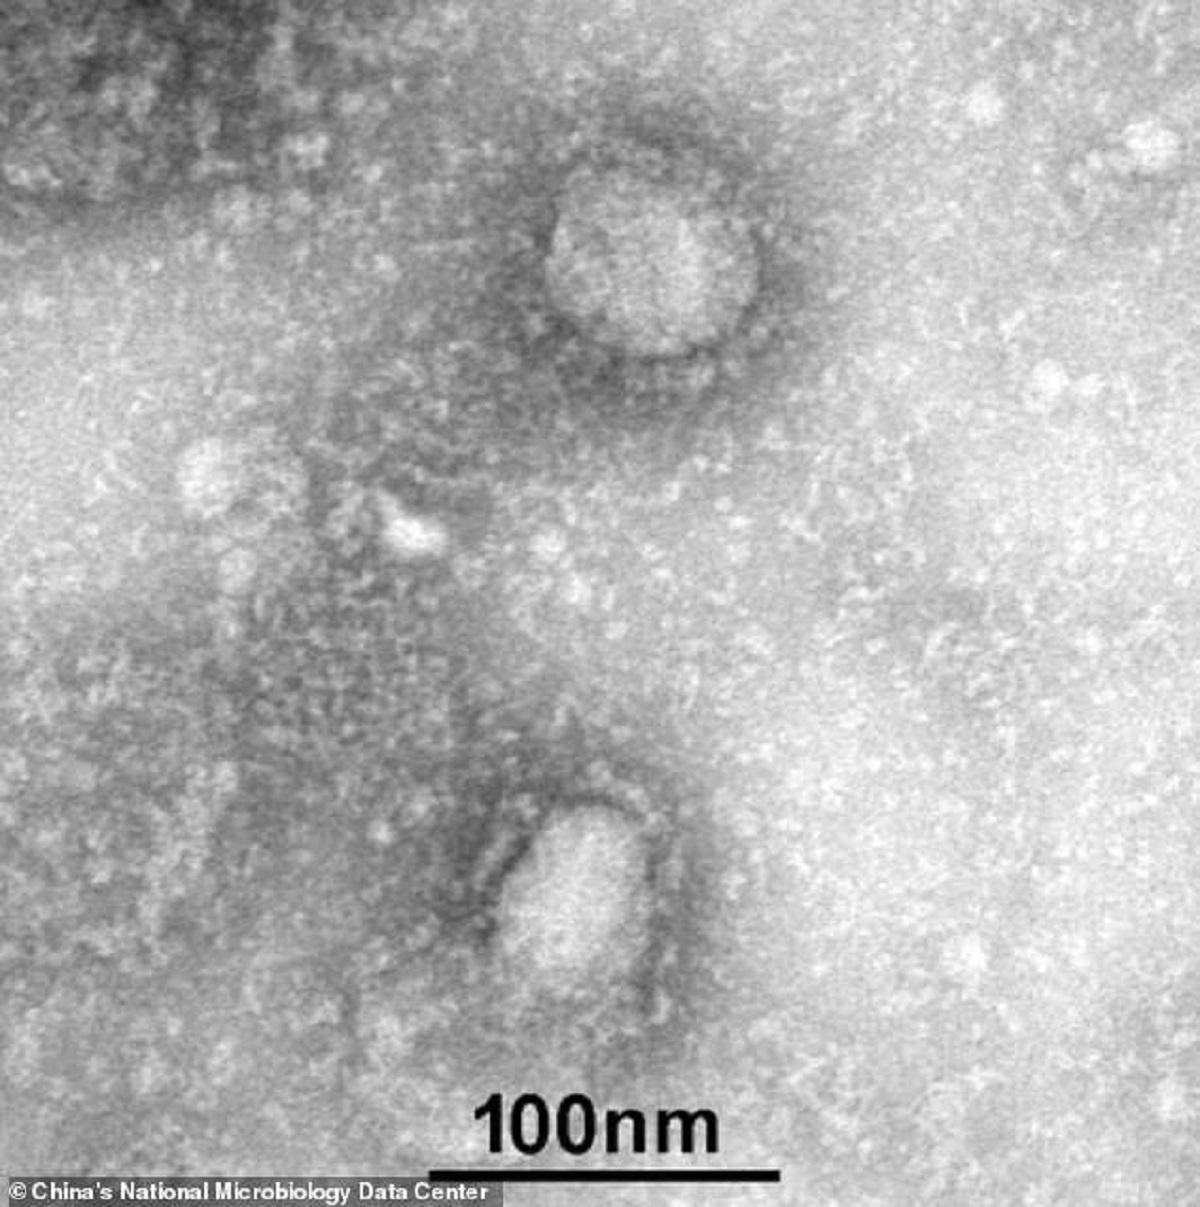 Imagini cu virusul care a ucis, până în prezent, 107 oameni şi a infectat peste 4.400